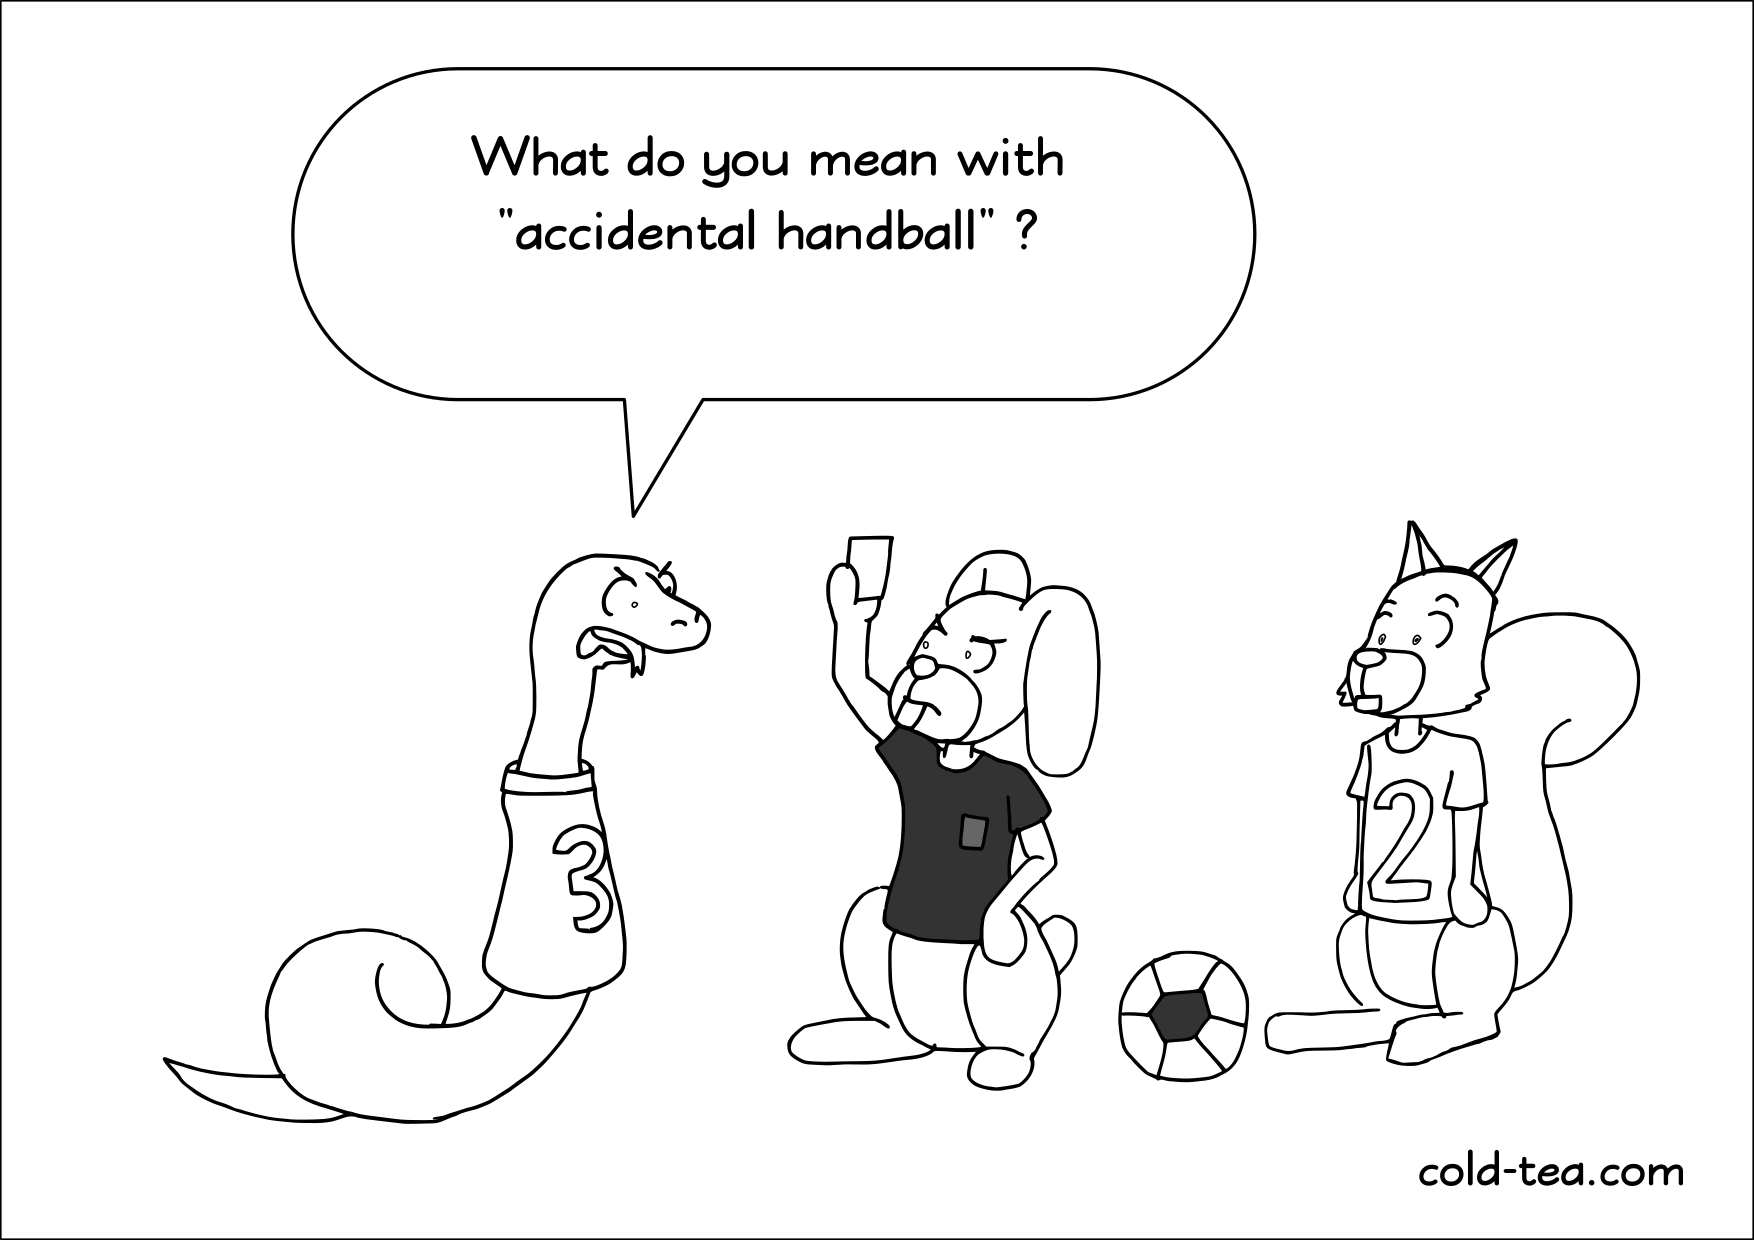 accidental handball